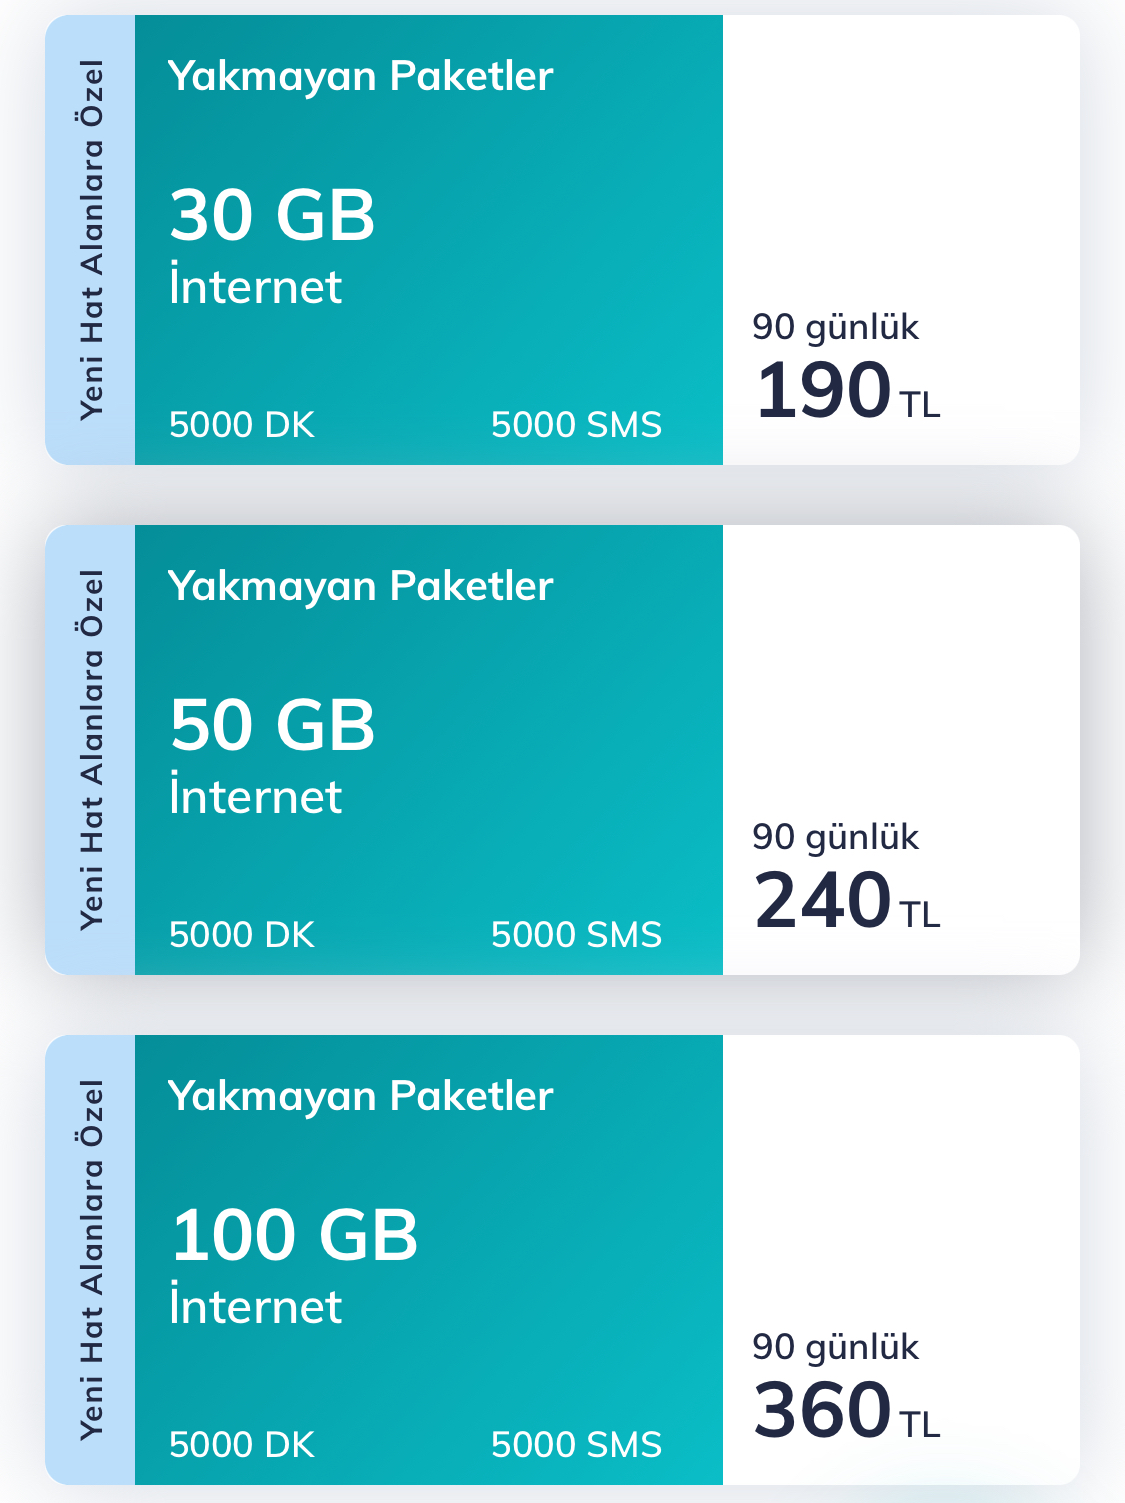 türk telekom dan yakmayan paketler 90 günlük faturasız paketler